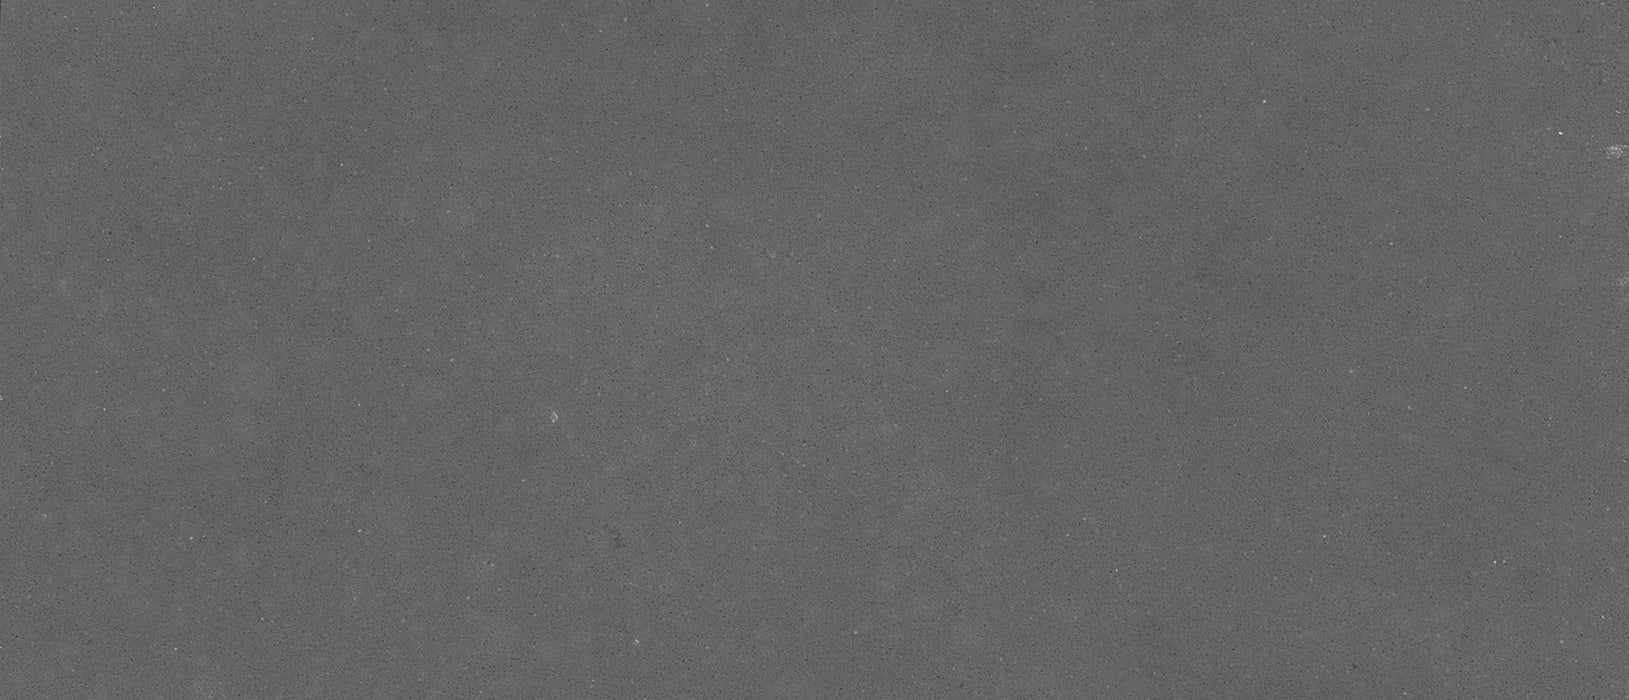 Shadow gray quartz countertop close up